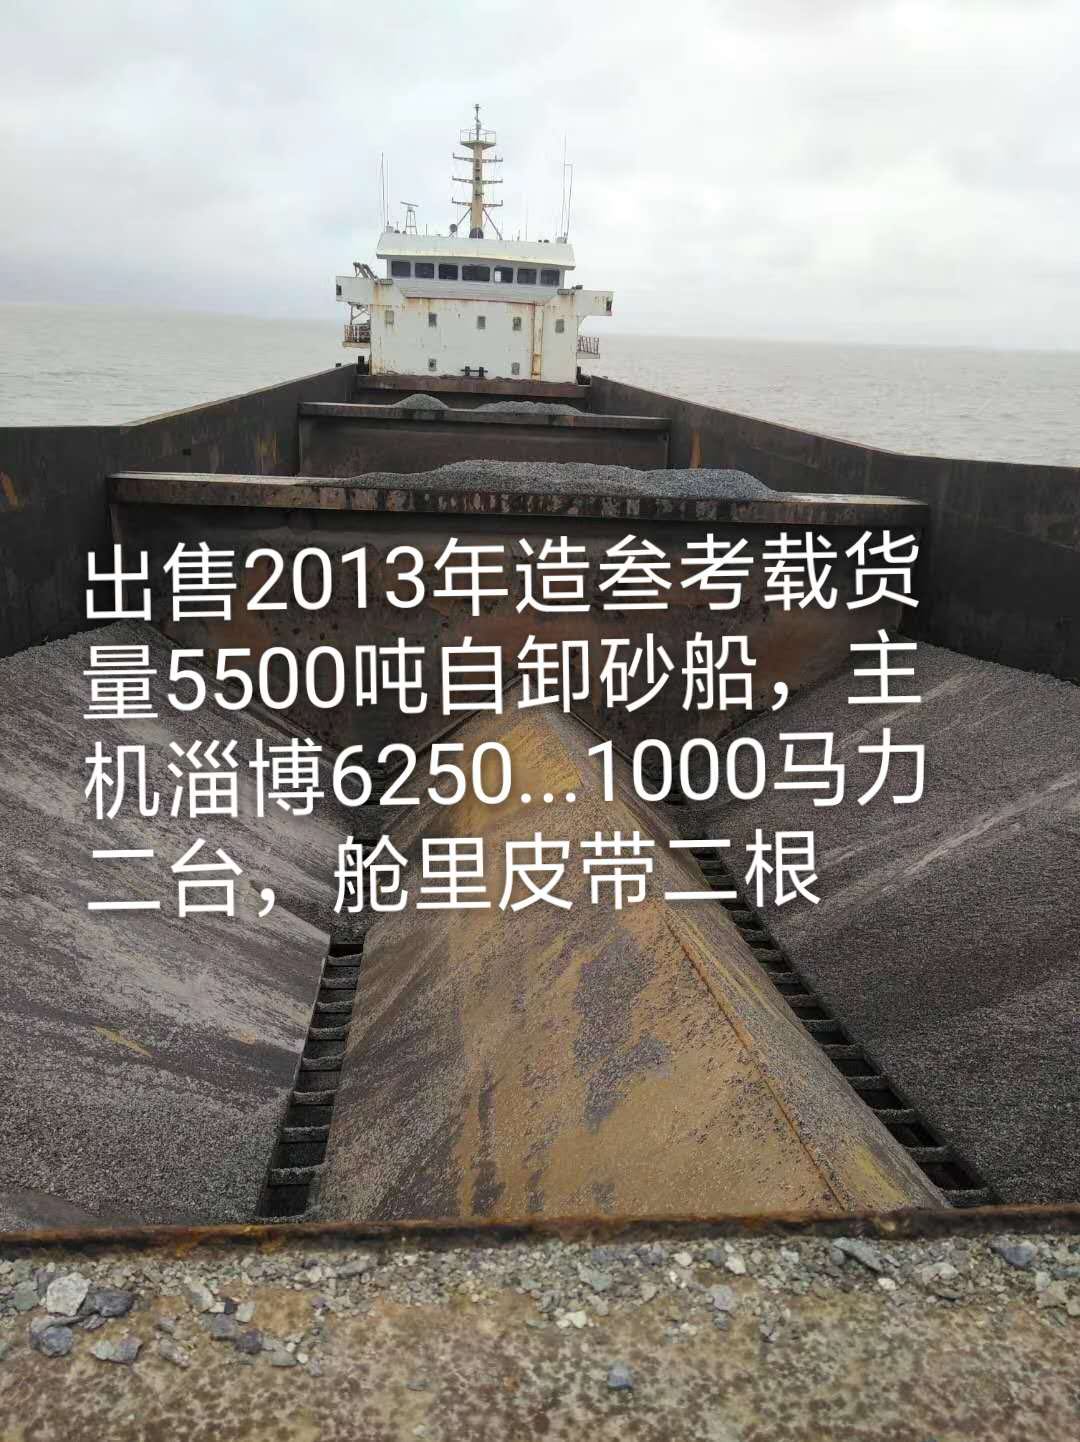 5500吨自卸沿海散货沙船